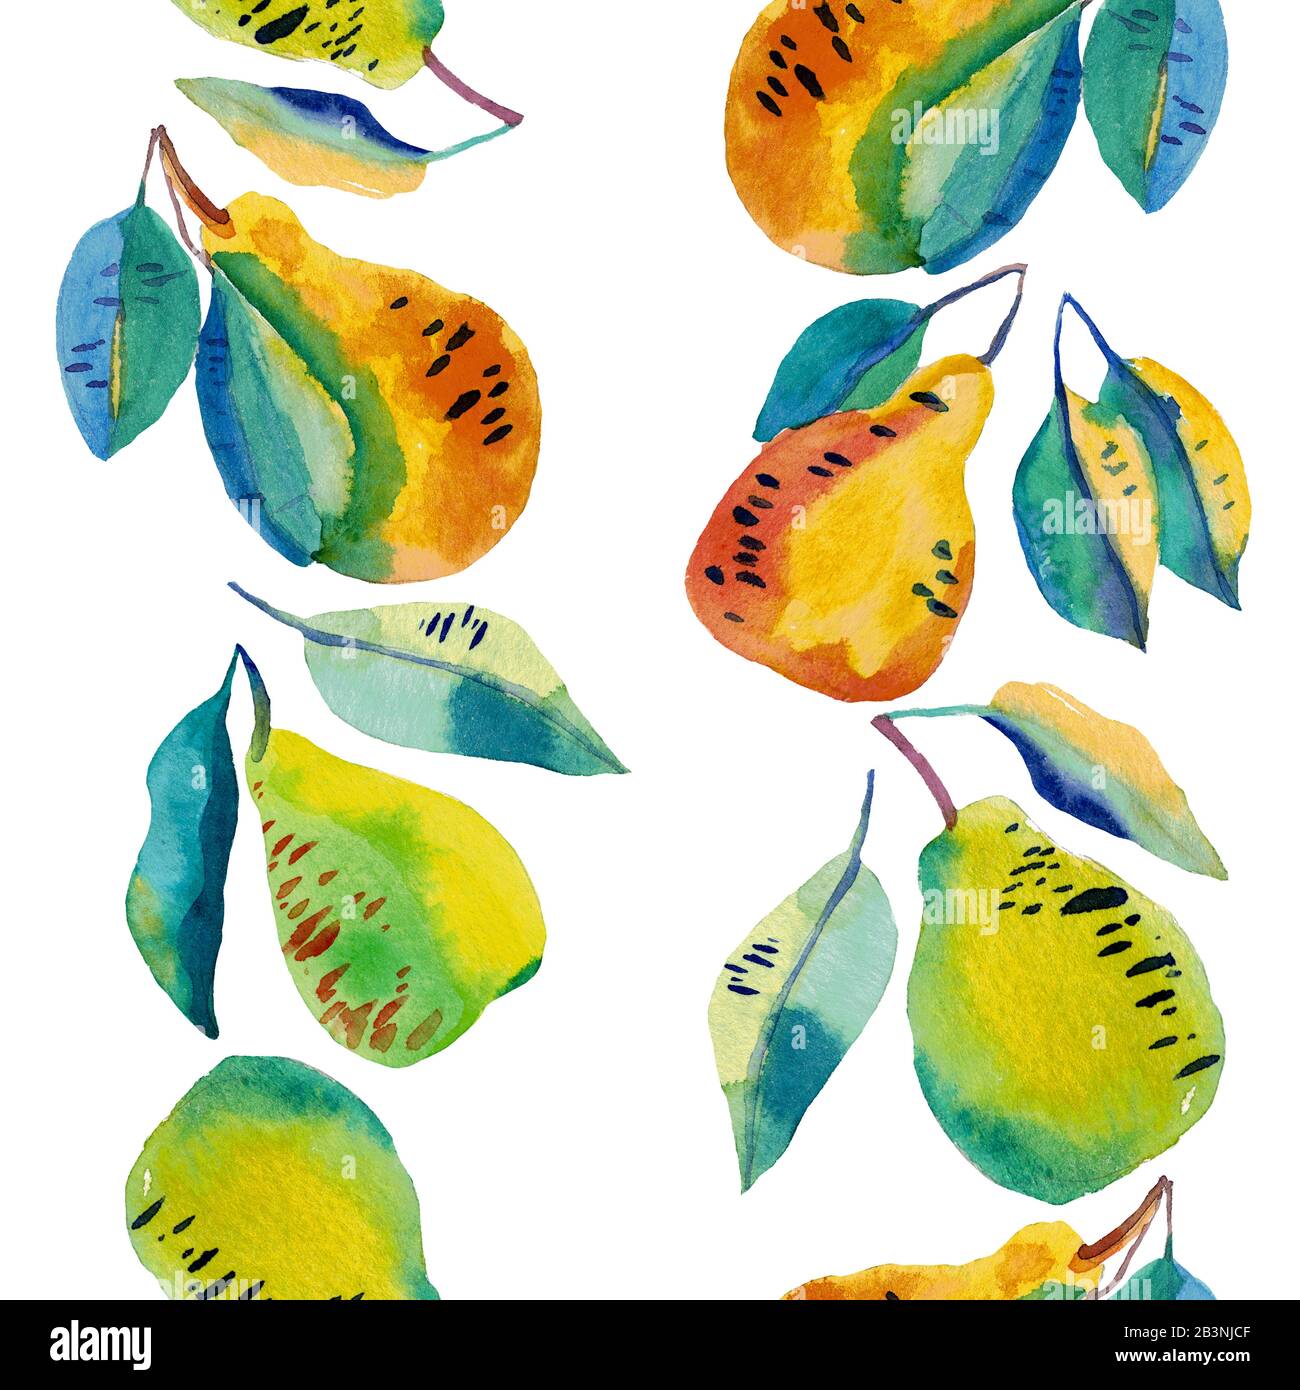 Handbemalte Birnen in Farbe in vertikalem, nahtlosem Rahmen. Komposition in Gelb, Orange und Blau, Cartoon-Stil. Coole vegetarische Illustration. Stockfoto